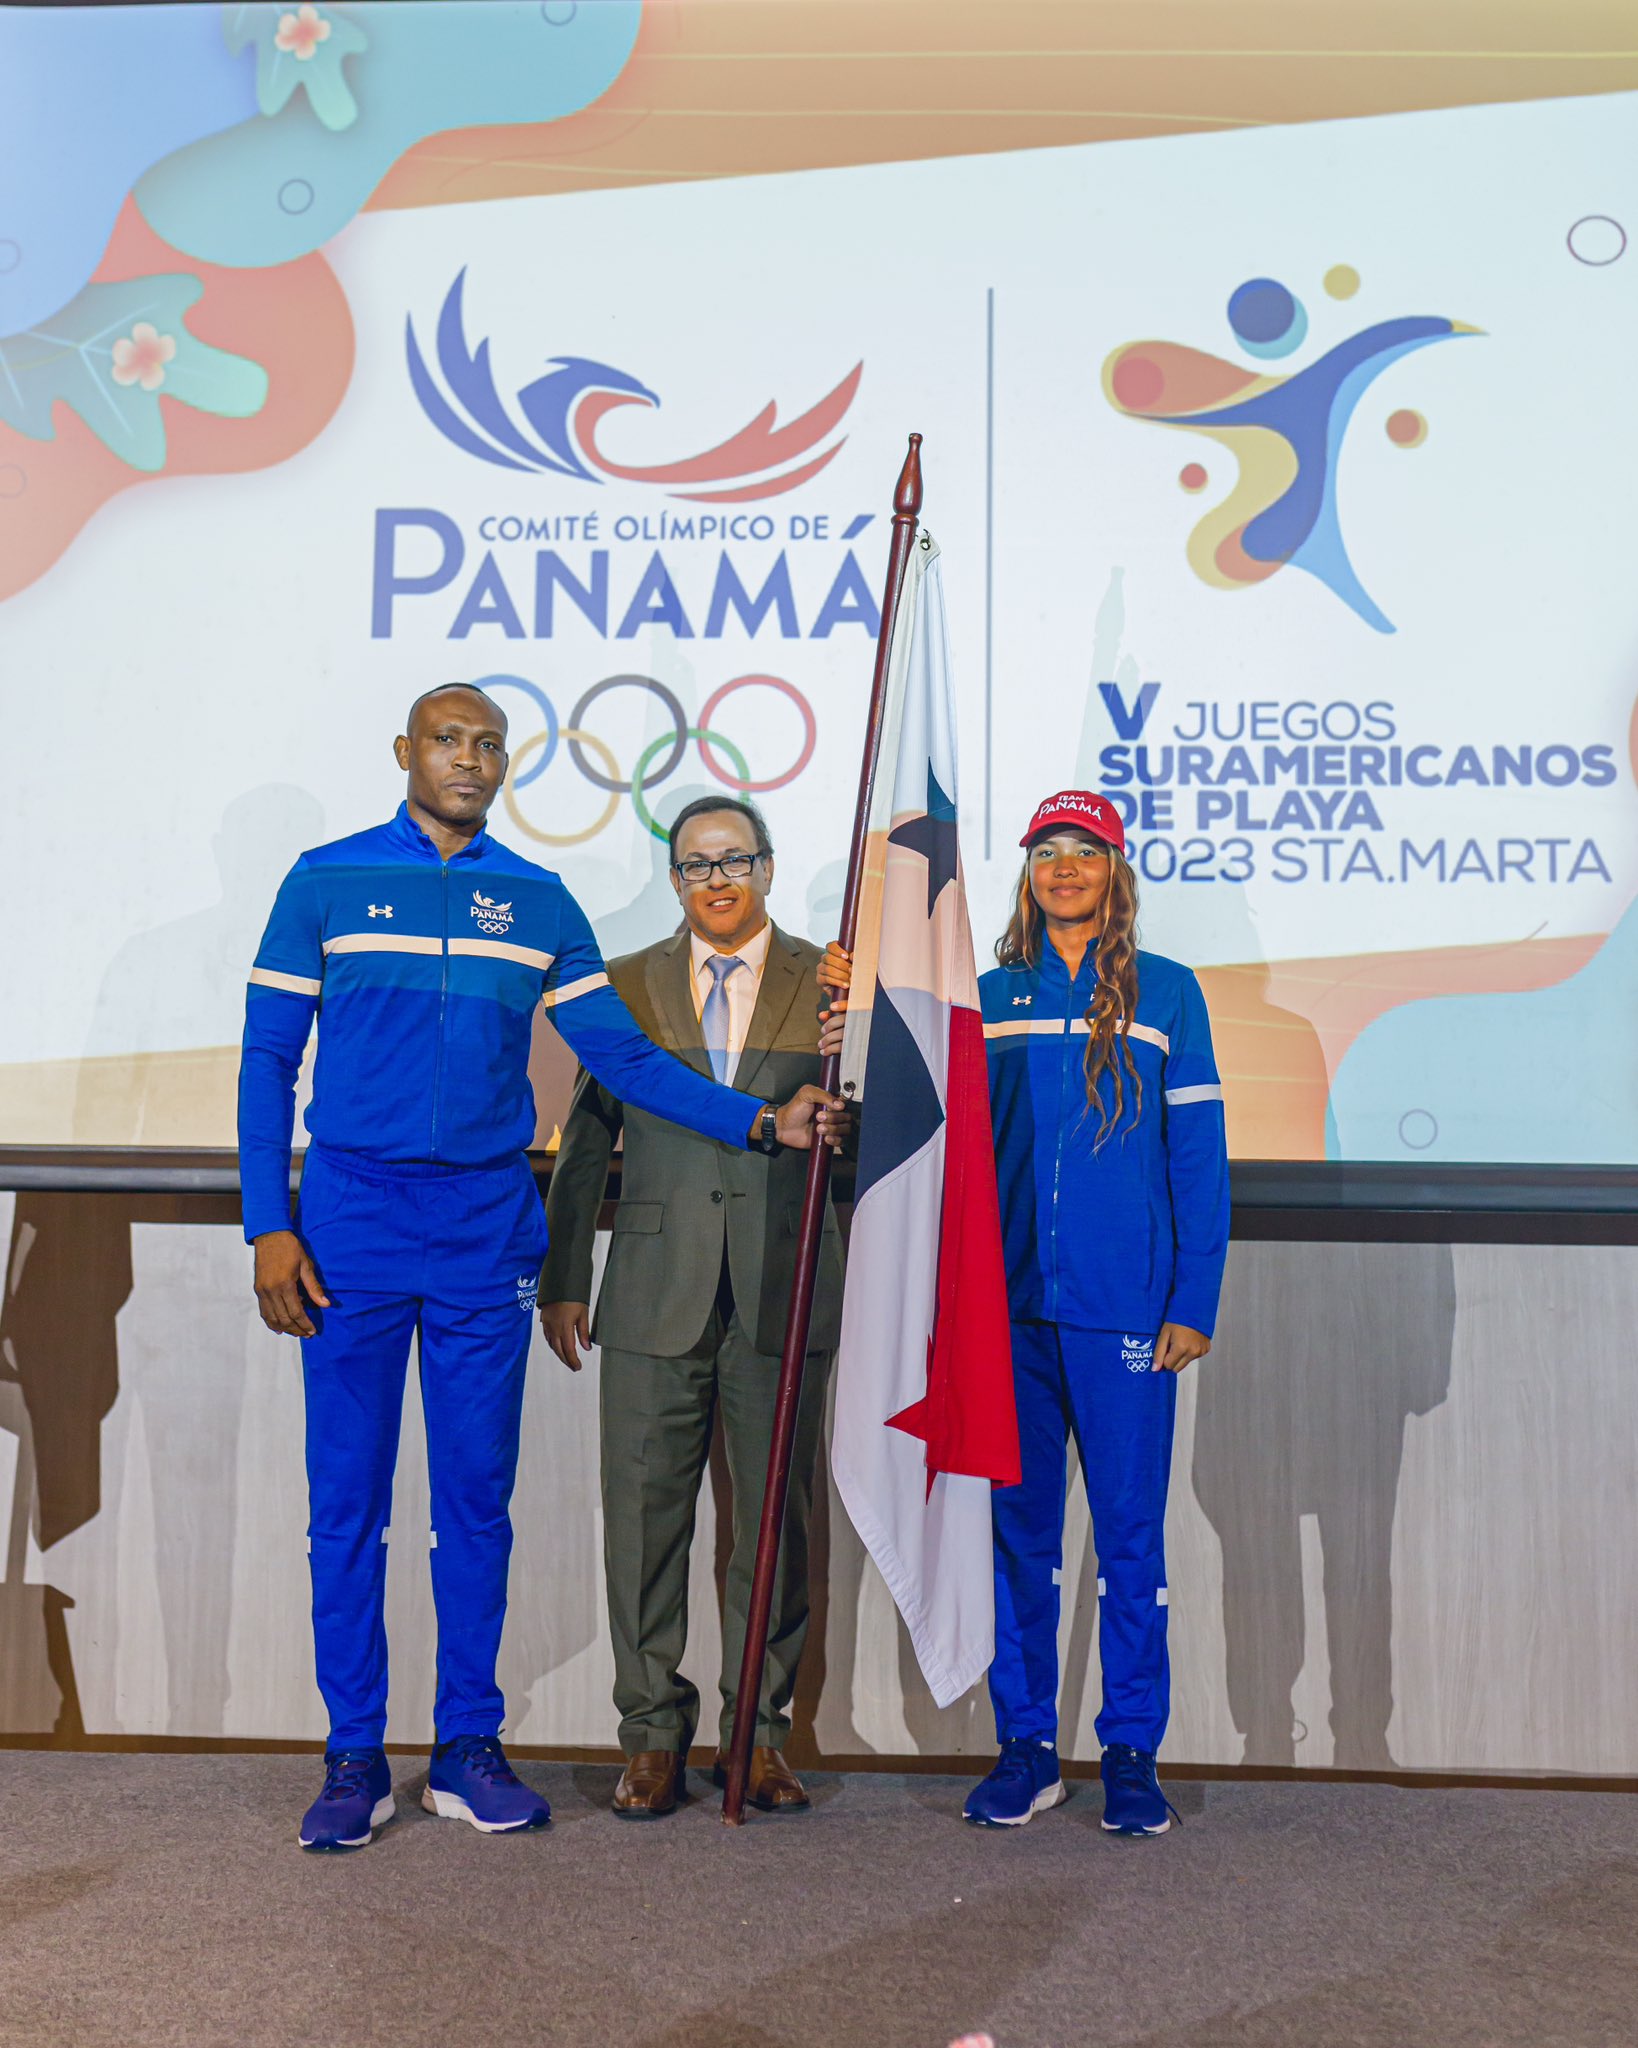 Panamá lista para los Juegos San Salvador 2023 y Santa Marta 2023